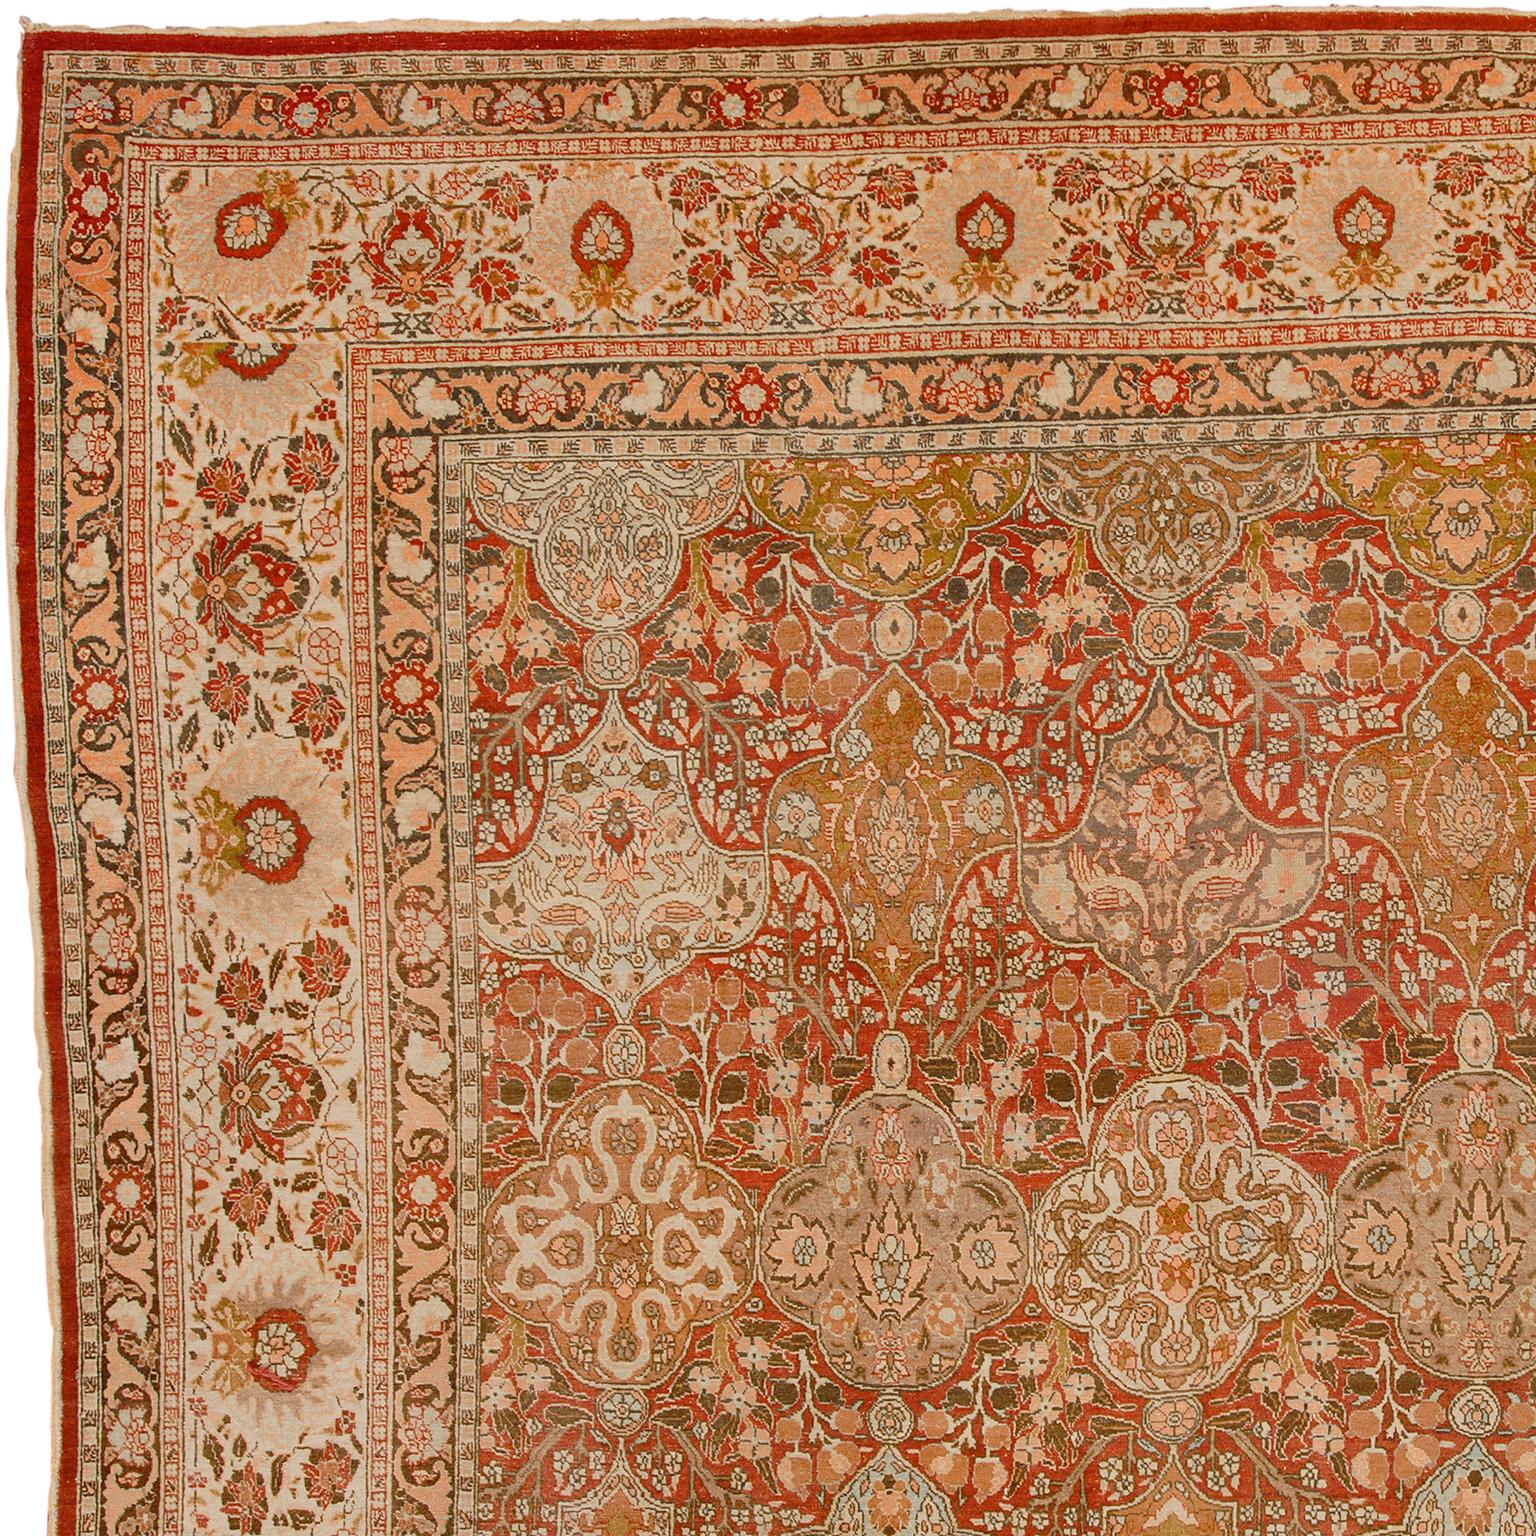 Antique Persian Tabriz rug.
North-West Persia, circa 1890.
Handwoven.